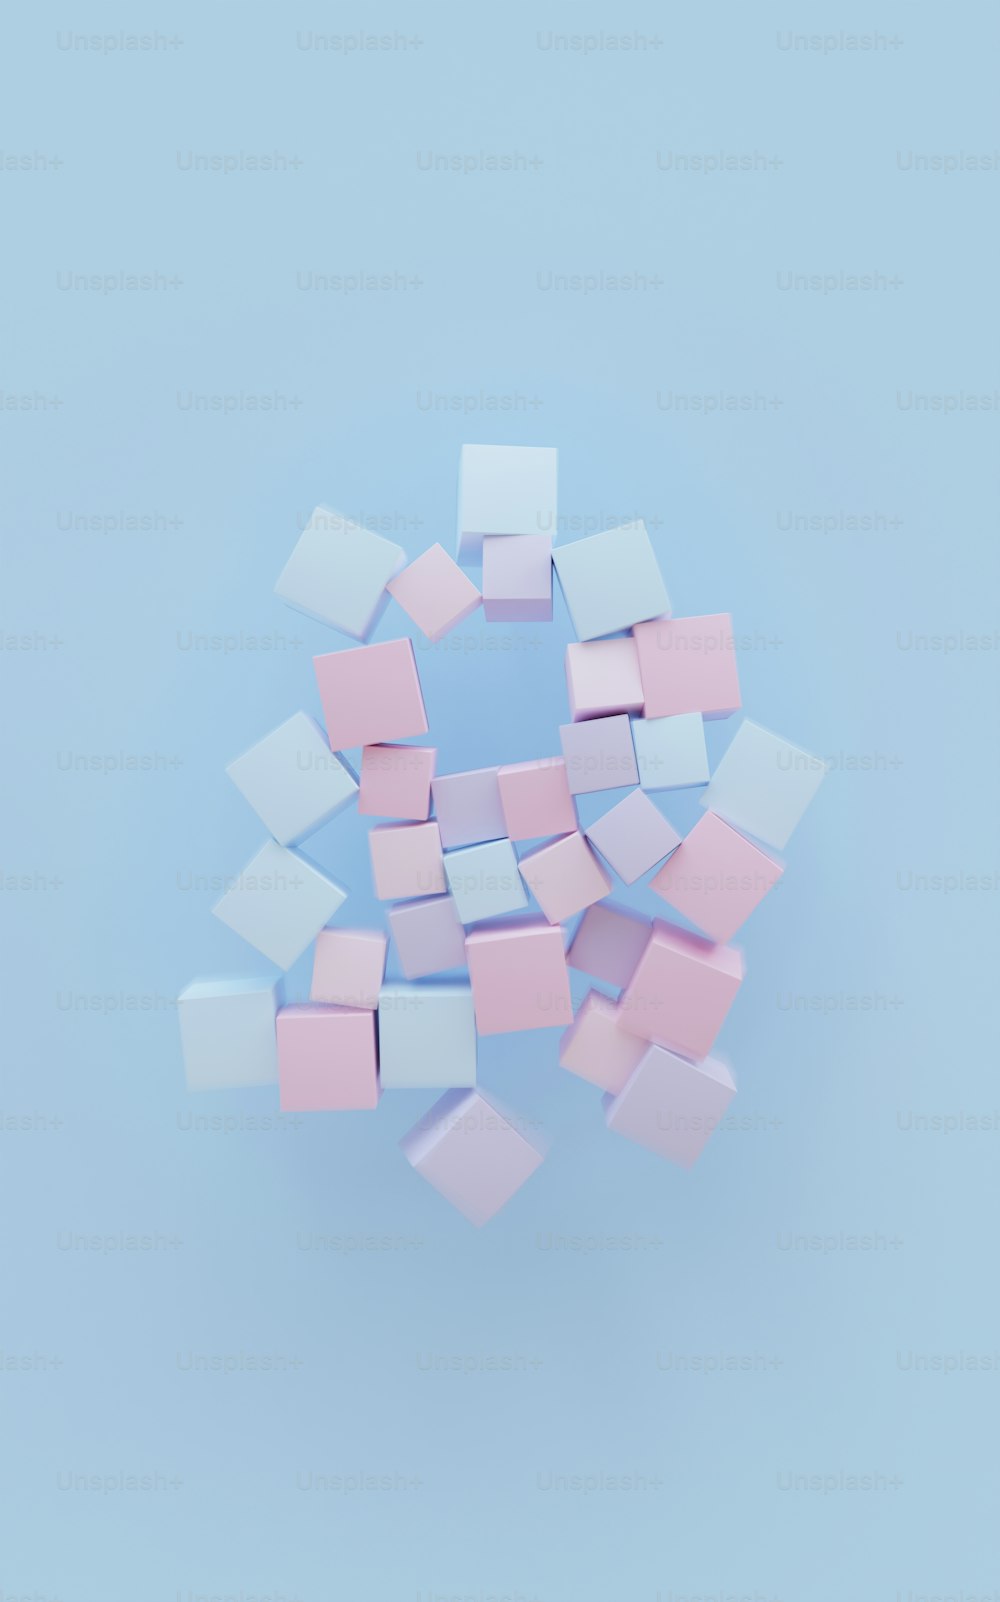 un tas de petits carrés roses et blancs